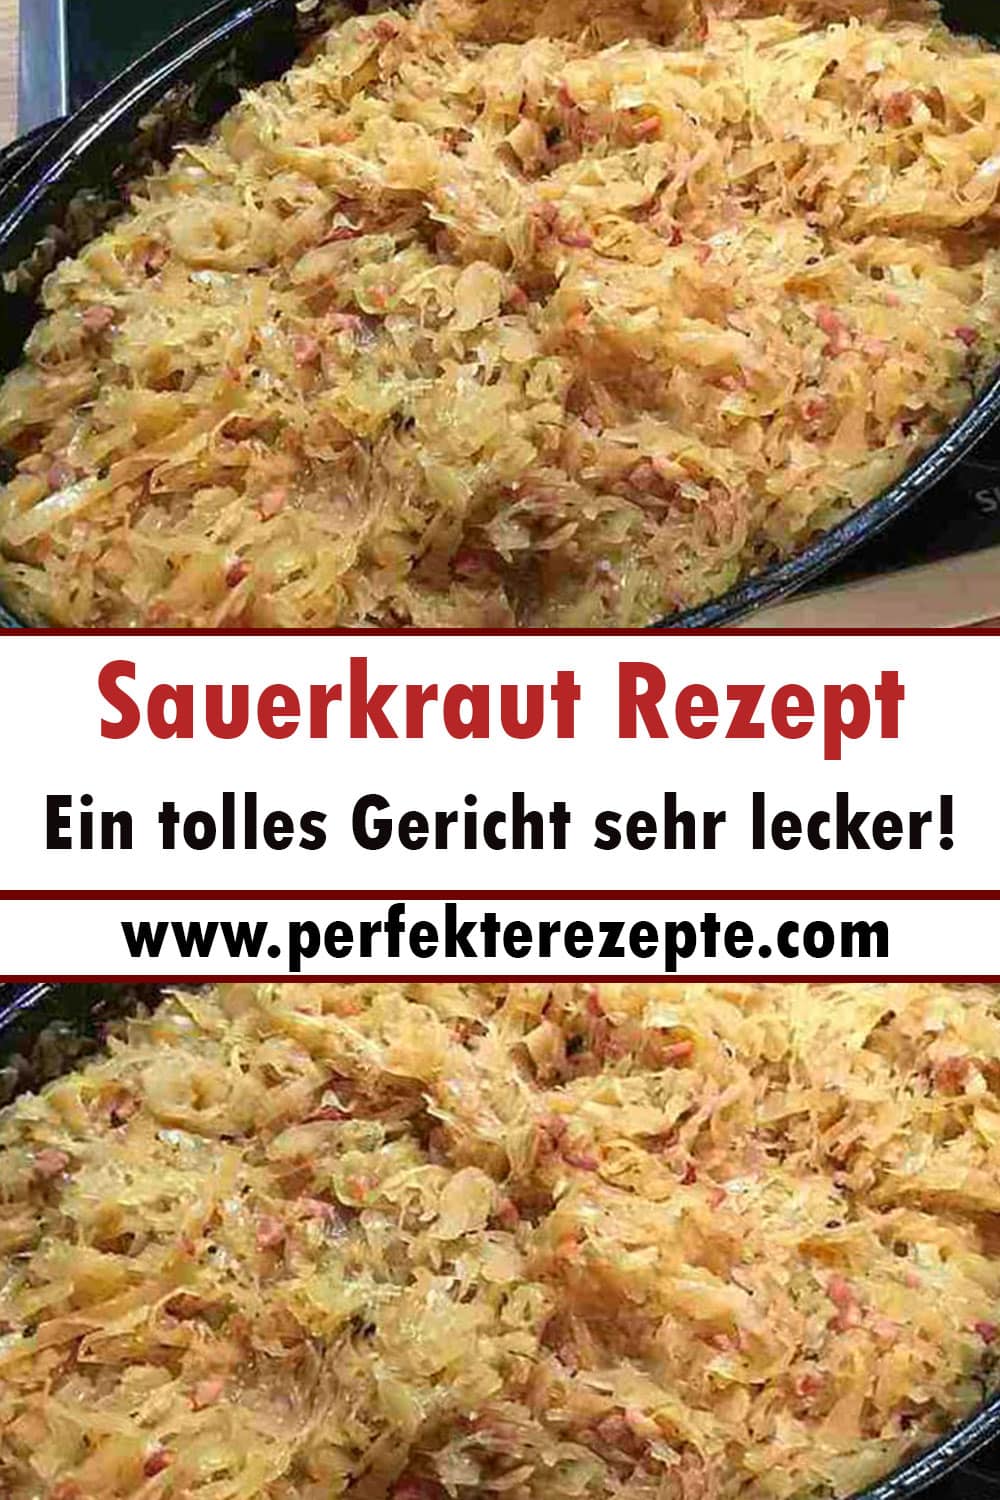 Sauerkraut Rezept Ein tolles Gericht sehr lecker!